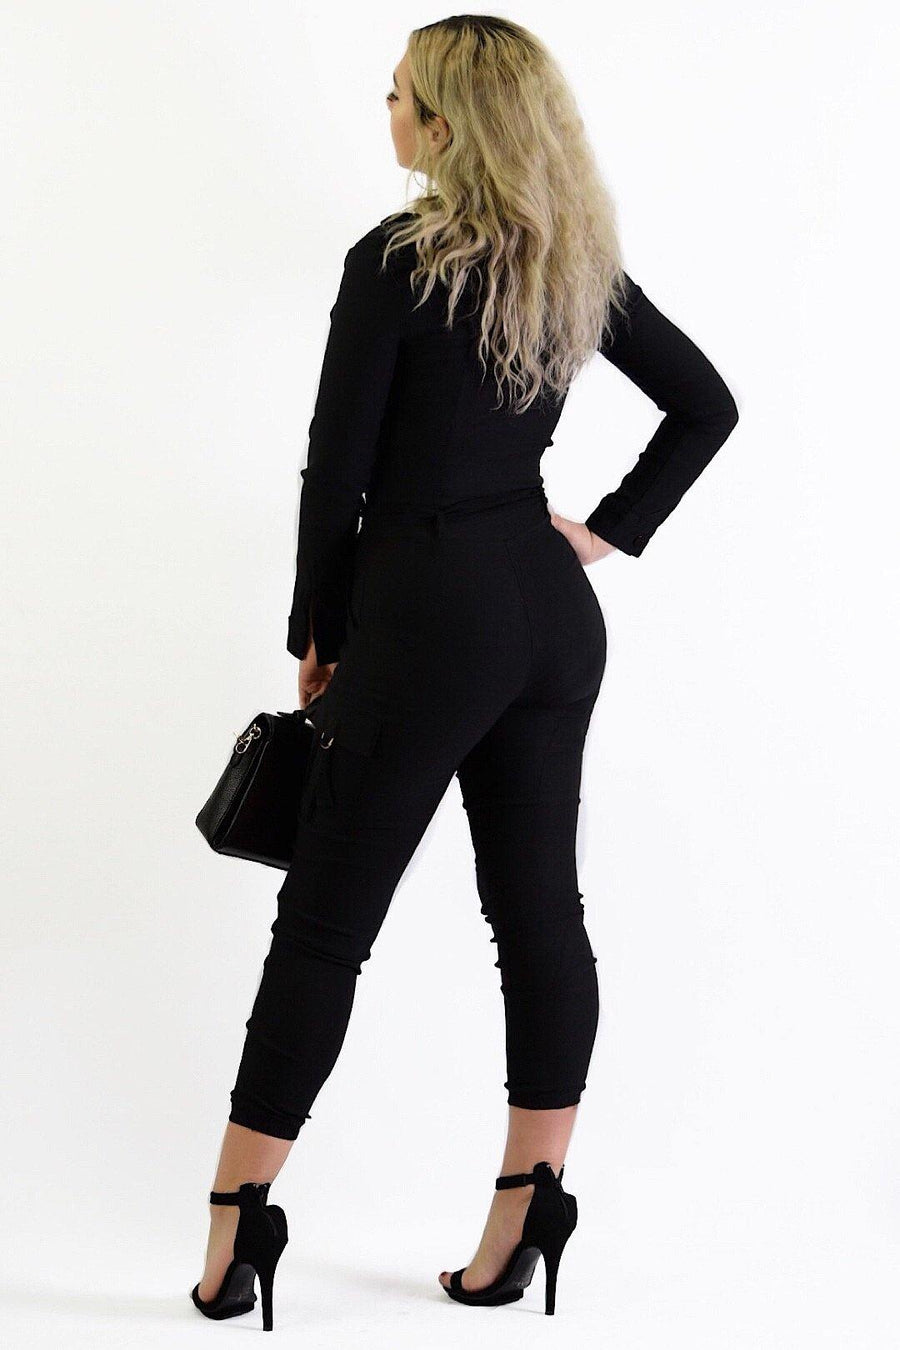 Kourtney, Long Sleeve Black Jumpsuit - Dimesi Boutique